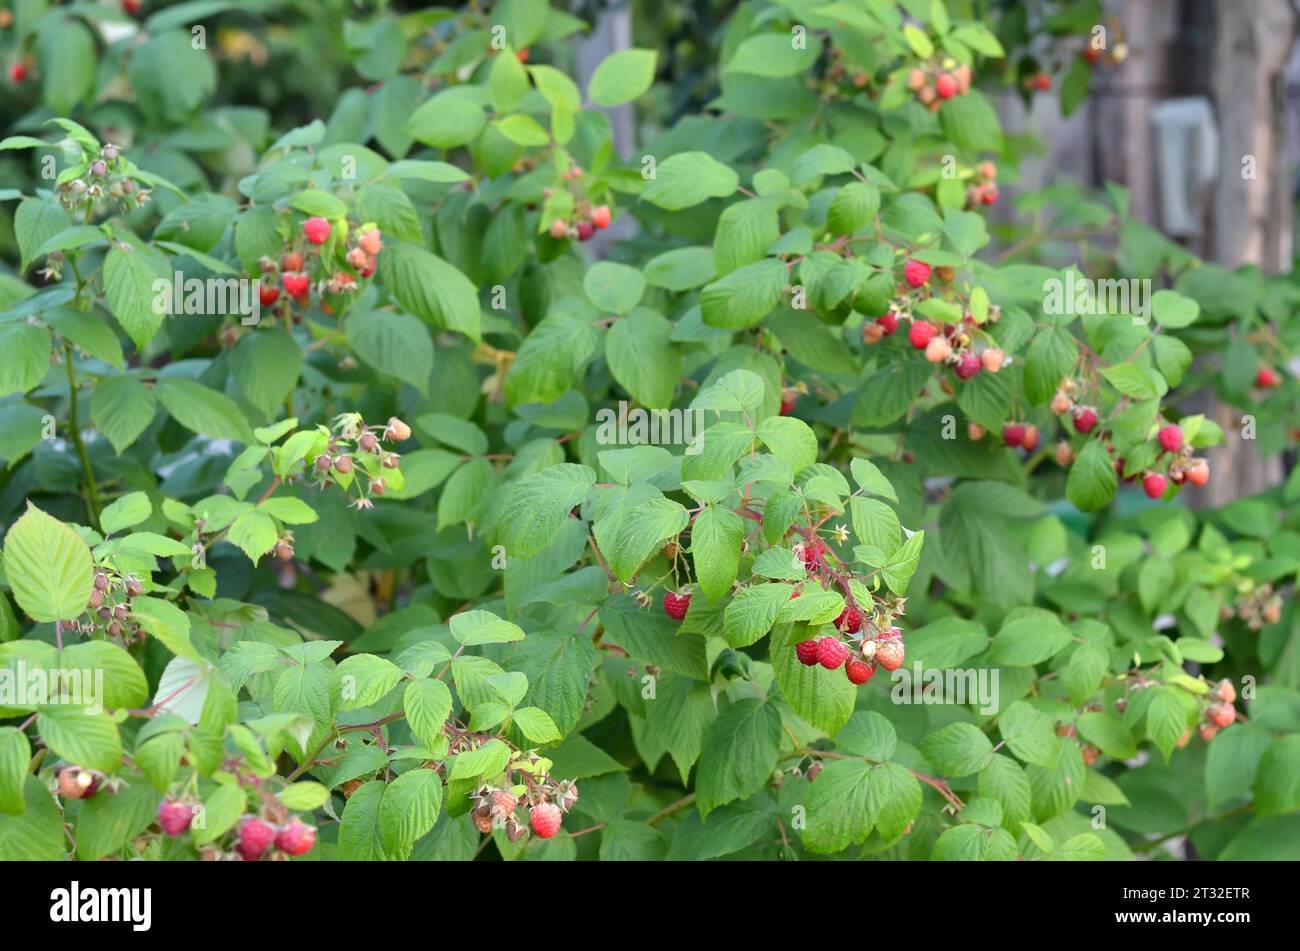 Gli ispessimenti di lampone con frutti di bosco maturi in un giardino estivo. Il concetto di coltivare il proprio cibo biologico. Foto Stock